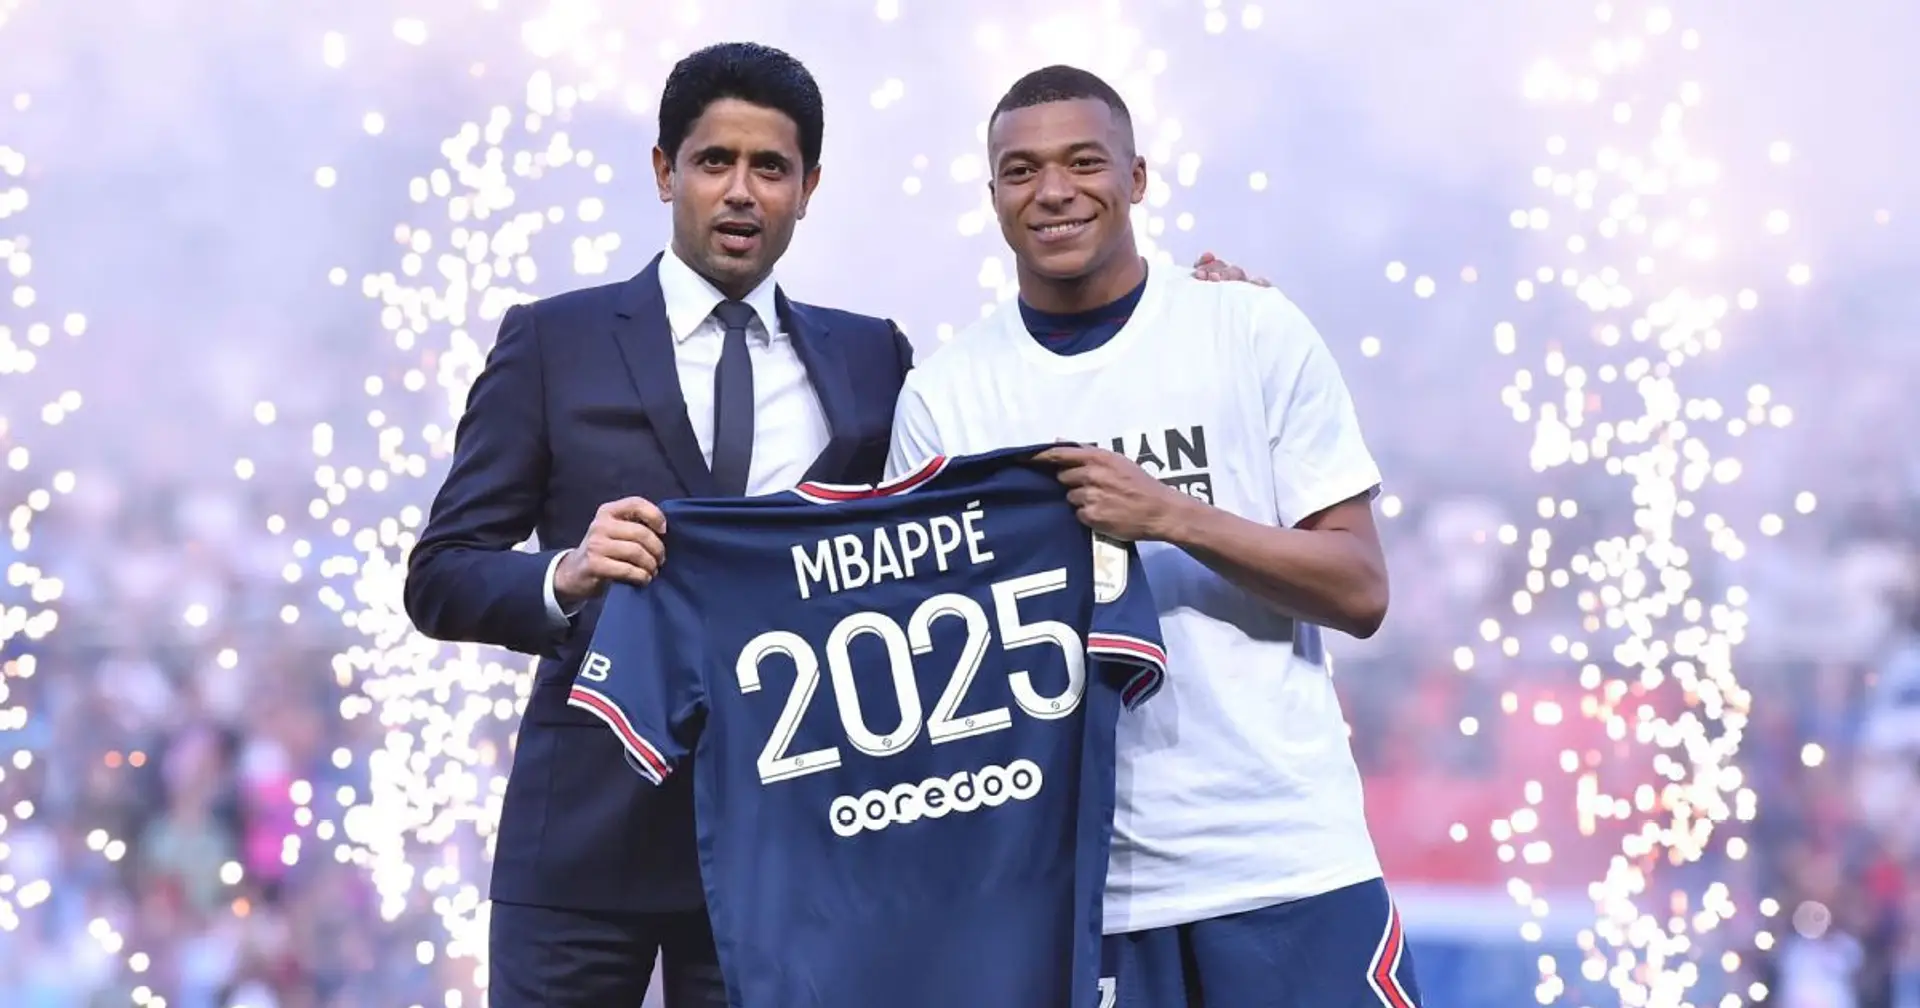 Mbappé prolonge son contrat avec le PSG et 3 autres grosses actus que vous auriez pu manquer